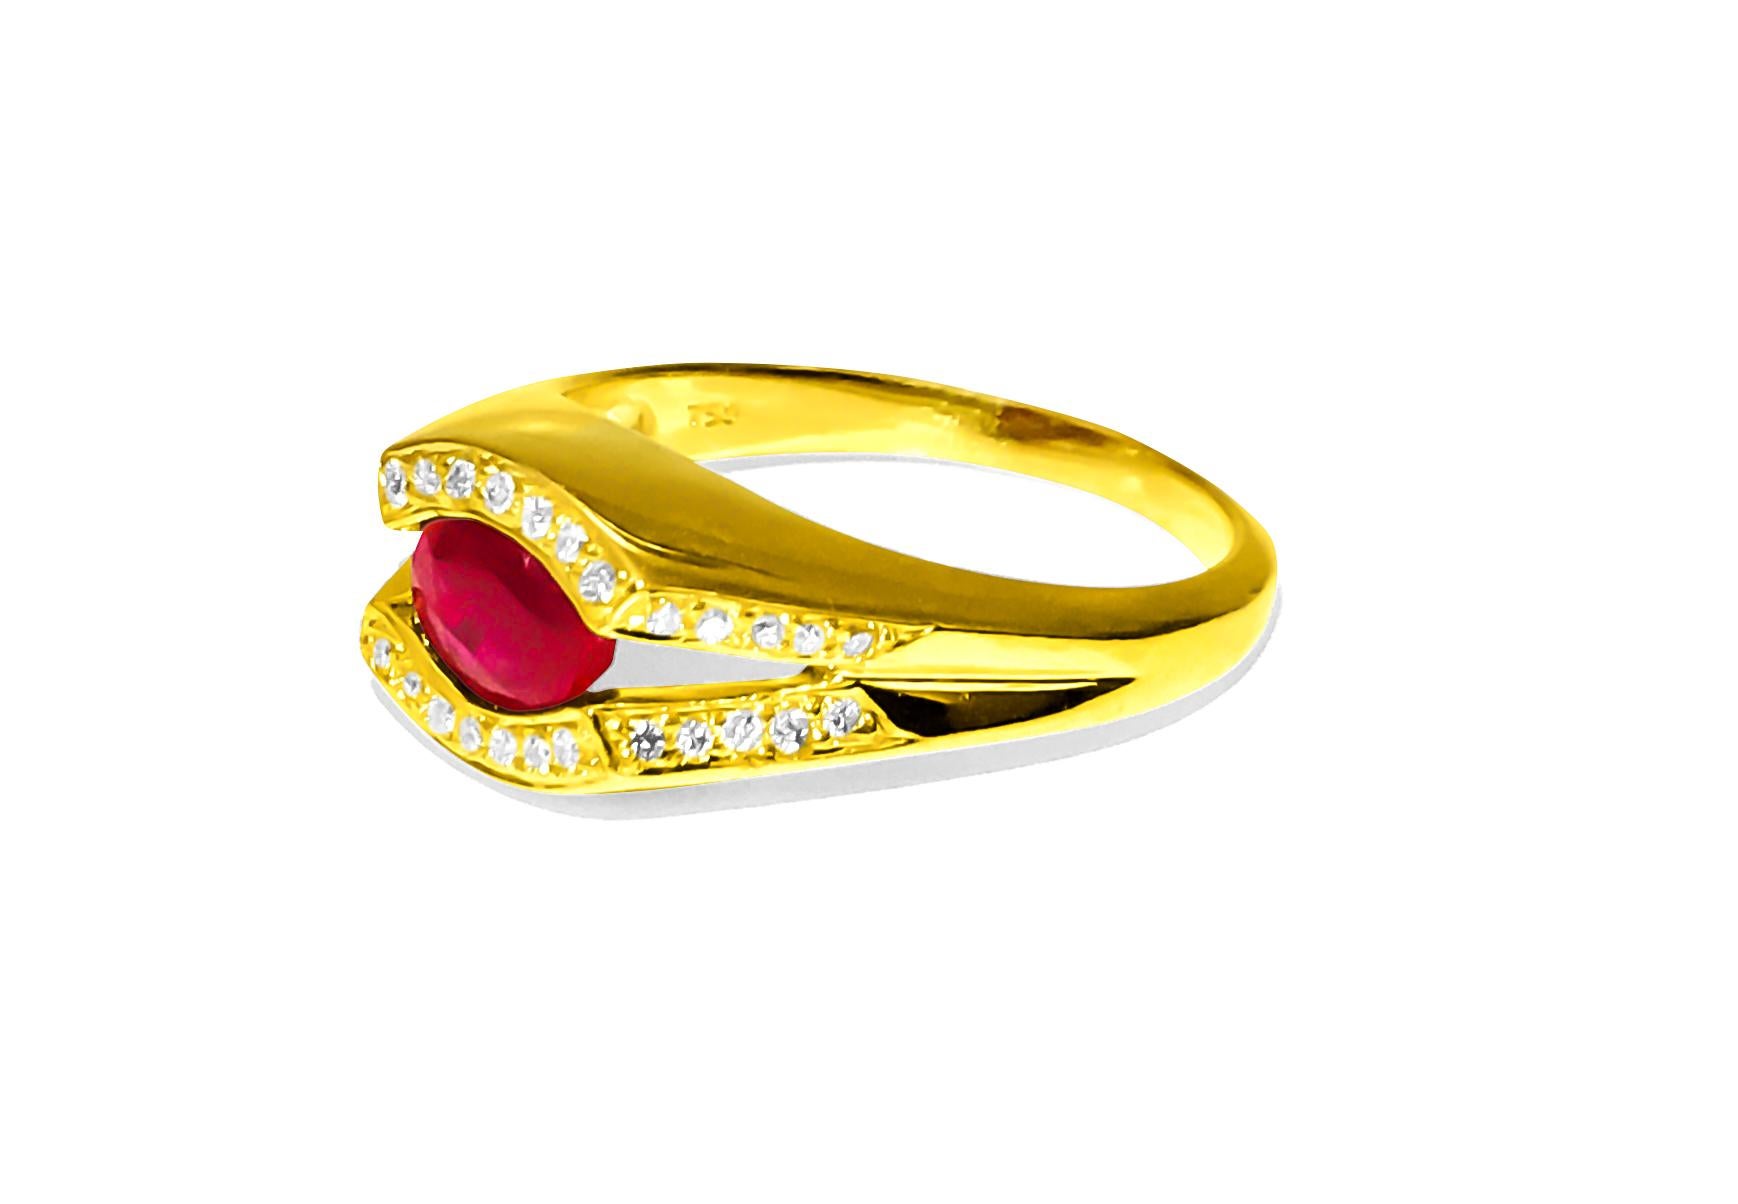 Dieser Ring ist aus glänzendem 18-karätigem Gelbgold gefertigt. Er ist mit einem schönen ovalen 2-Karat-Rubin aus Birma besetzt, der sicher an seinem Platz gehalten wird. Um den Rubin herum befinden sich 0,50 Karat Diamanten mit klarer Qualität (VS